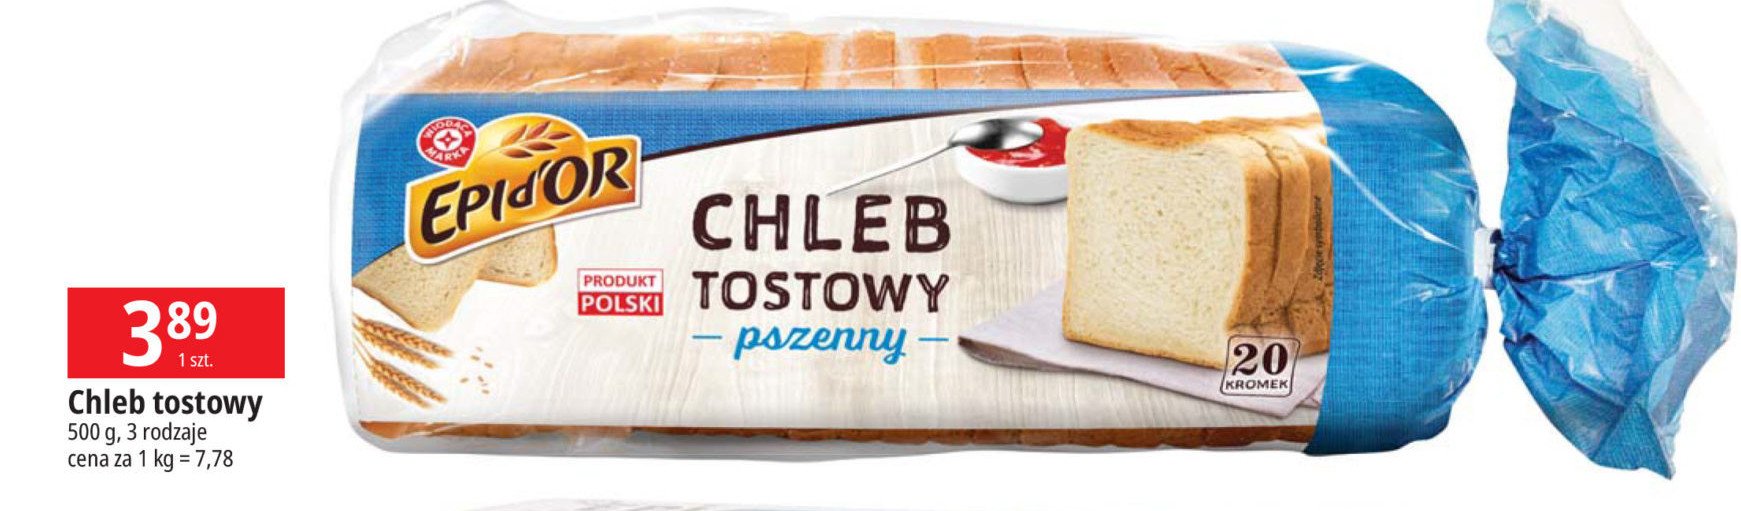 Chleb tostowy pszenny Wiodąca marka epid'or promocja